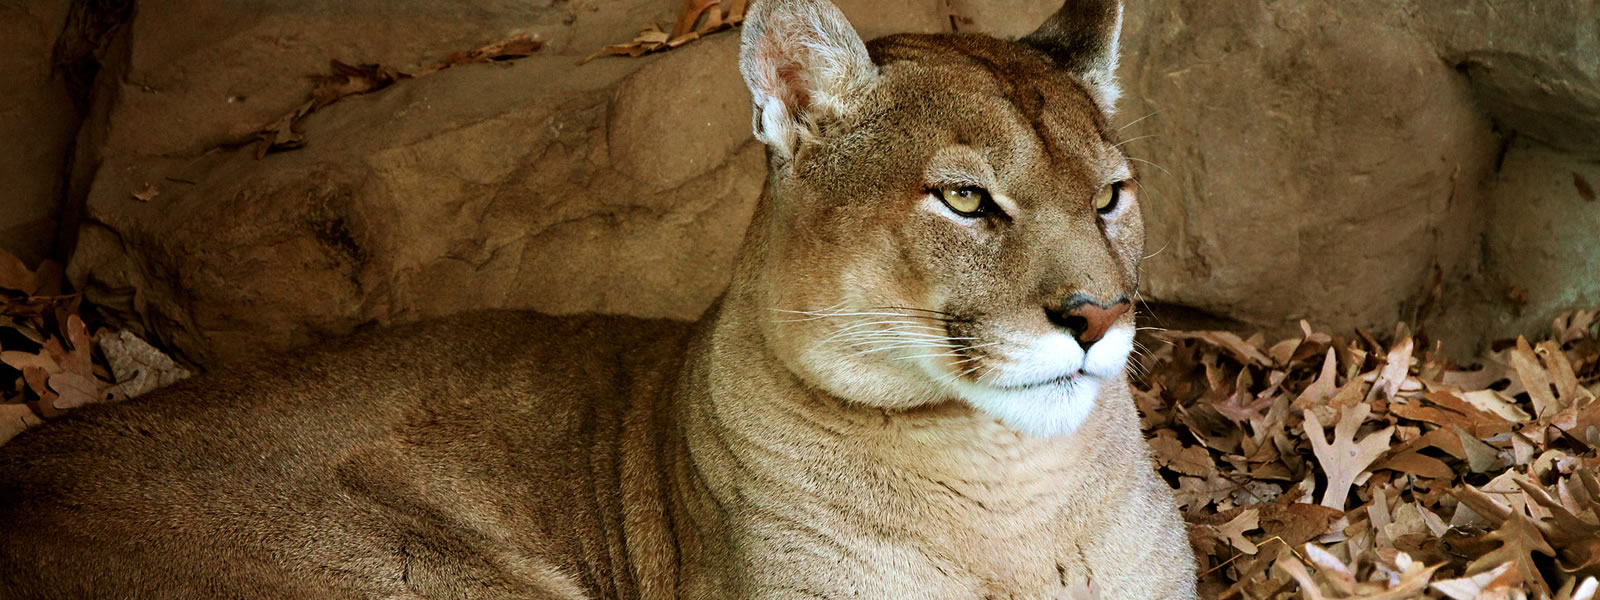 Close-up portrait of a cougar, Puma concolor